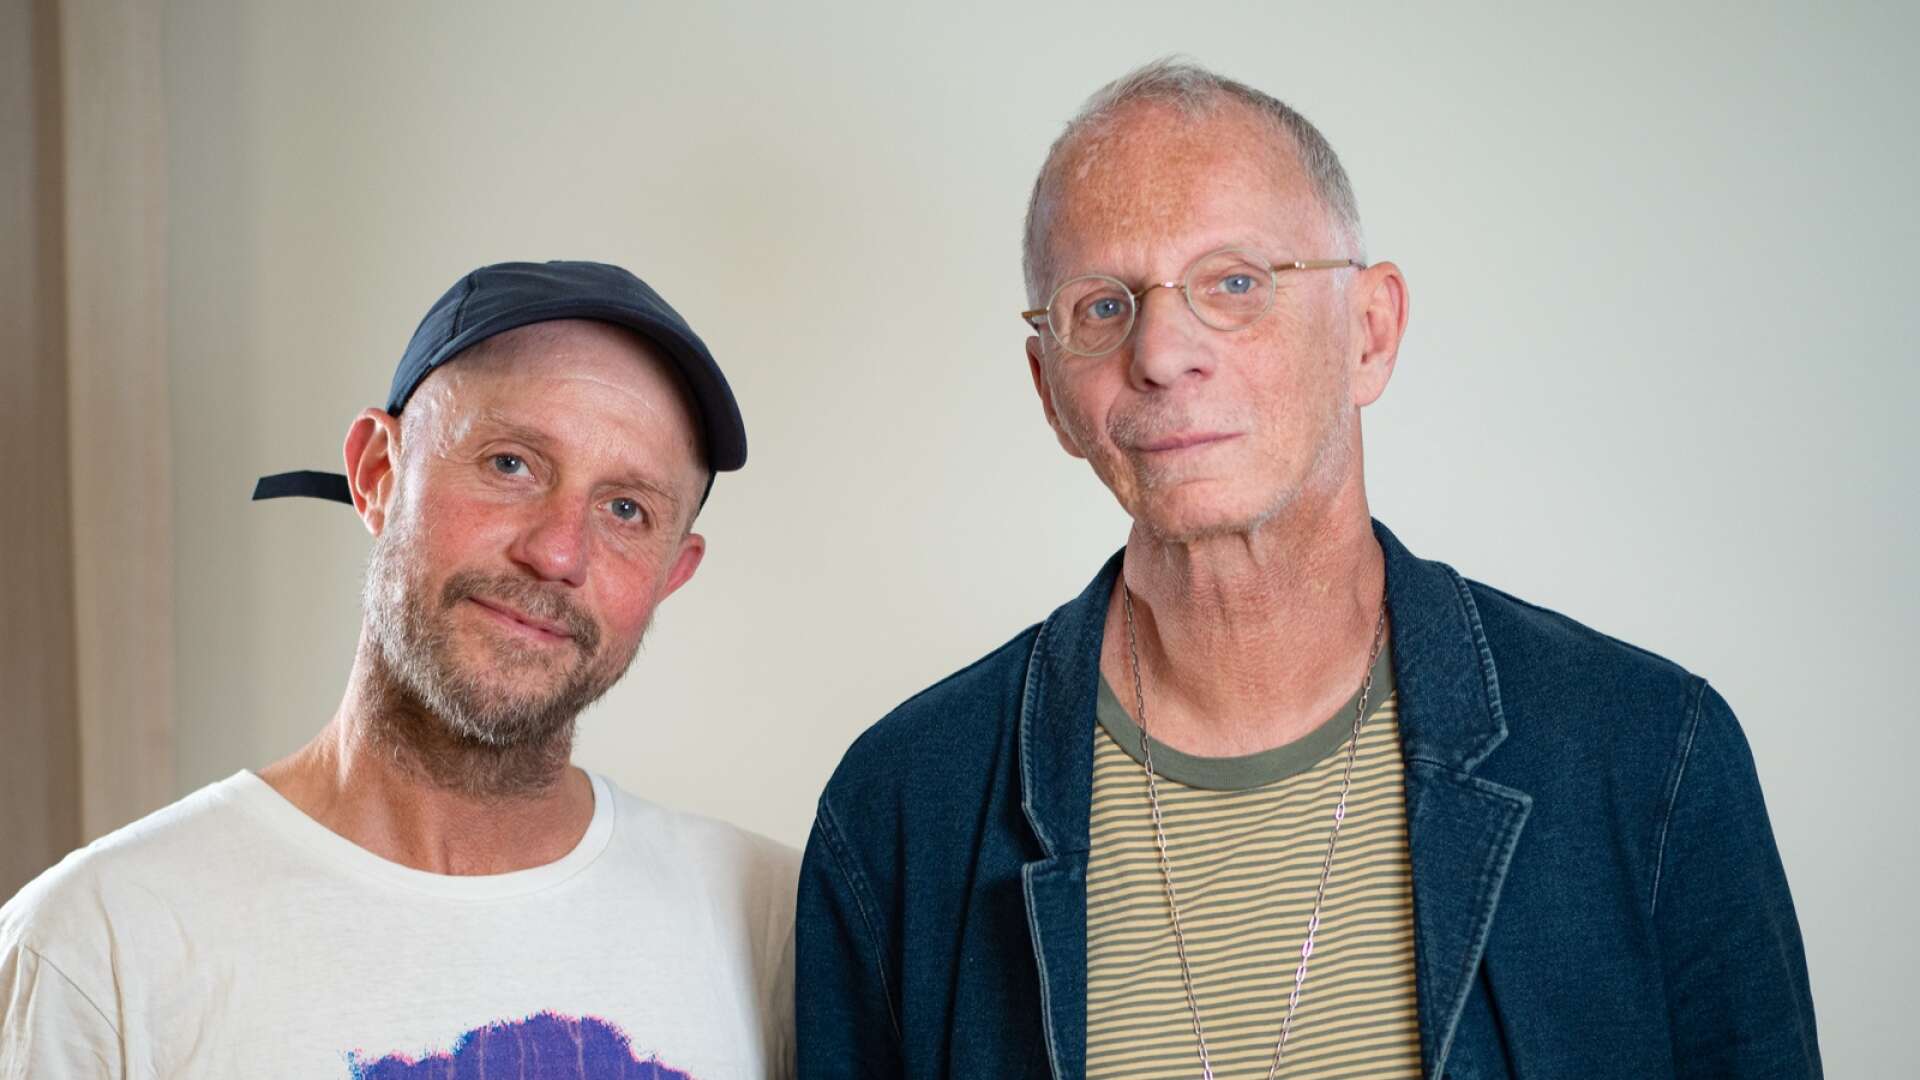 Fredrik Apollo Asplund och Steve Sjöquist (höger) är båda uppväxta i Värmland och delar många upplevelser av att vara ”annorlunda” i en lite bruksort. 